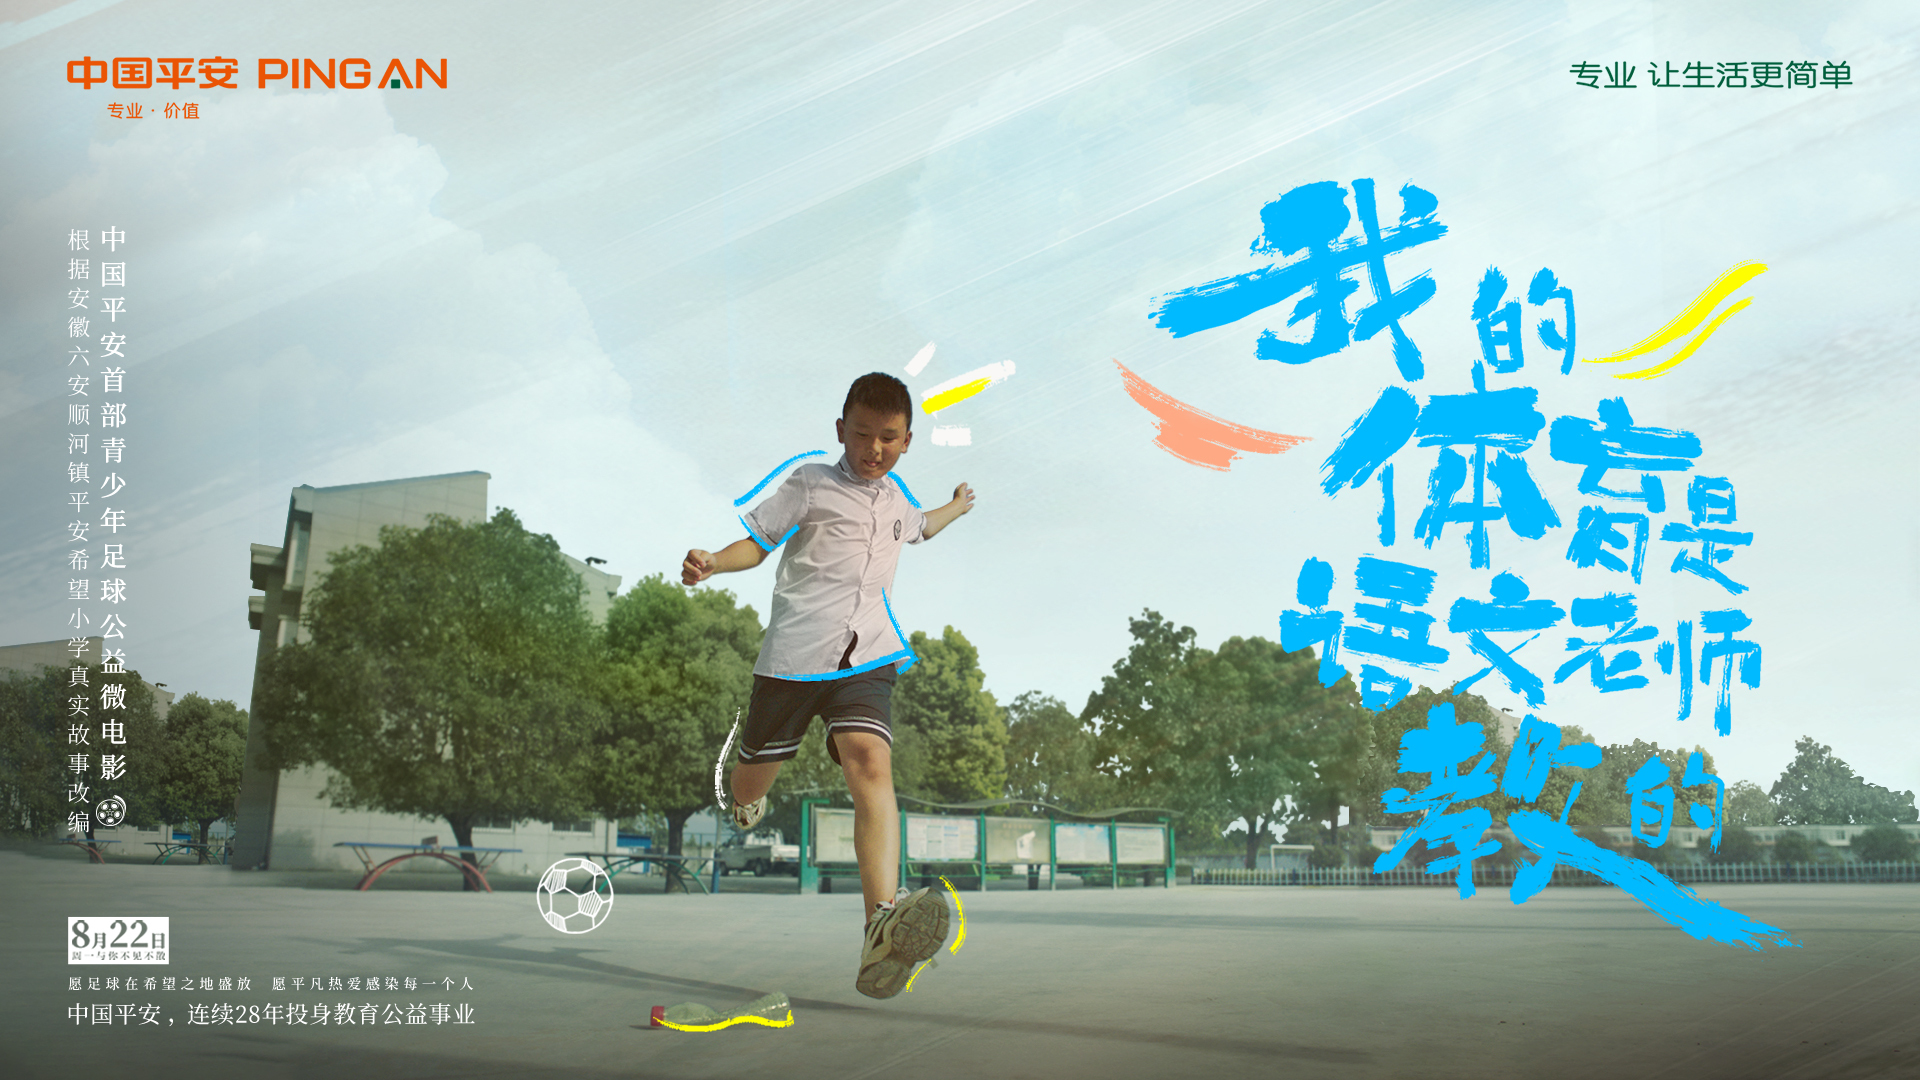 我的体育是语文老师教的｜中国平安首部青少年足球公益微电影